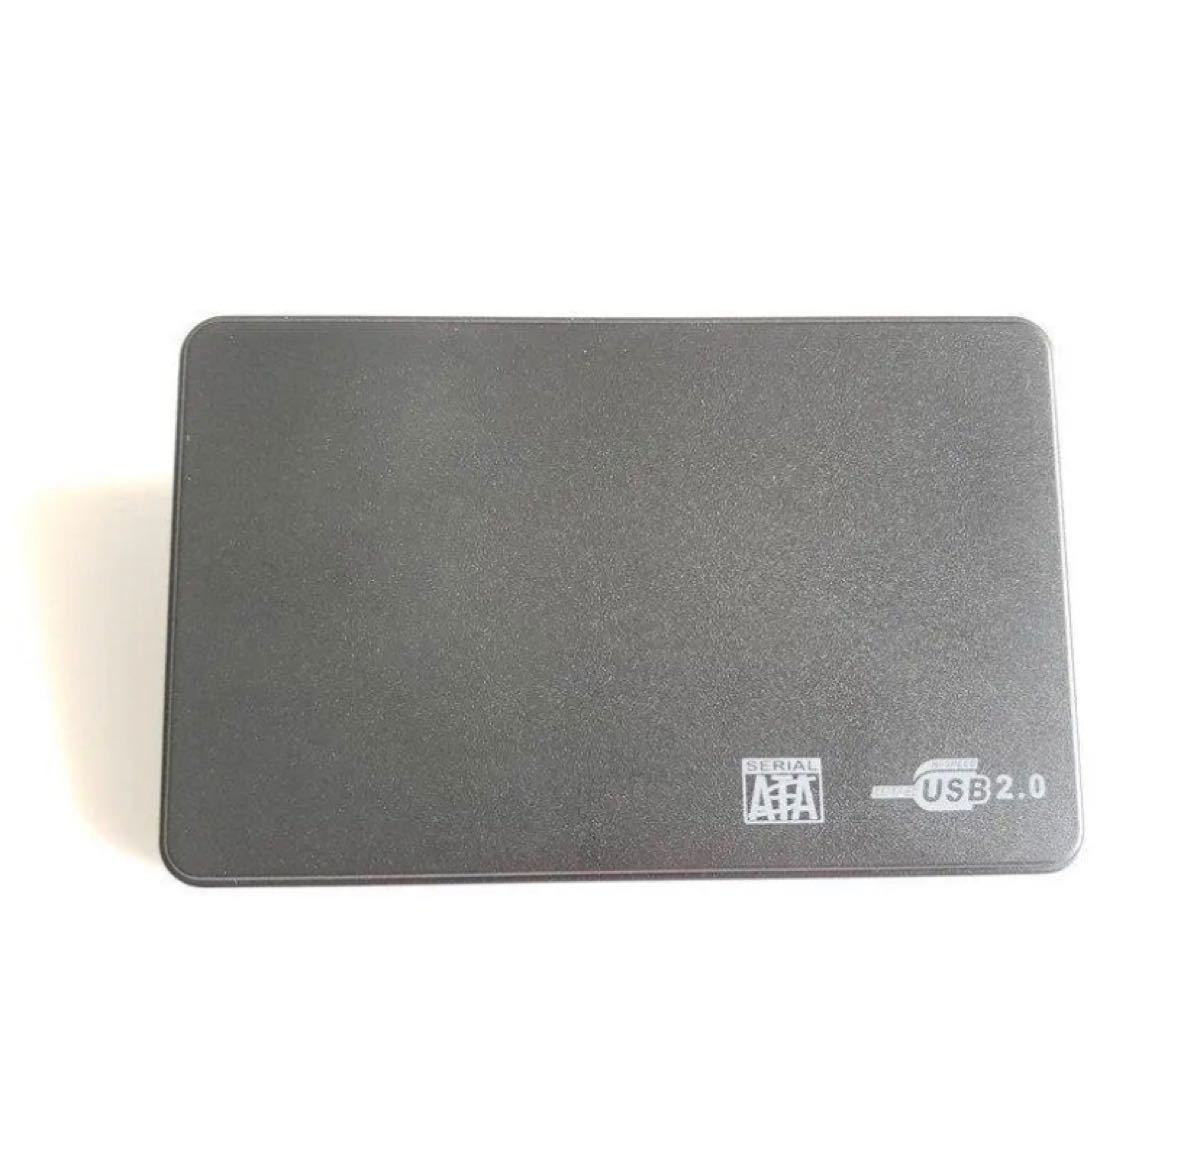 2.5インチ HDD/SSD ケース 接続 SATA 9.5mm/7mm対応 白